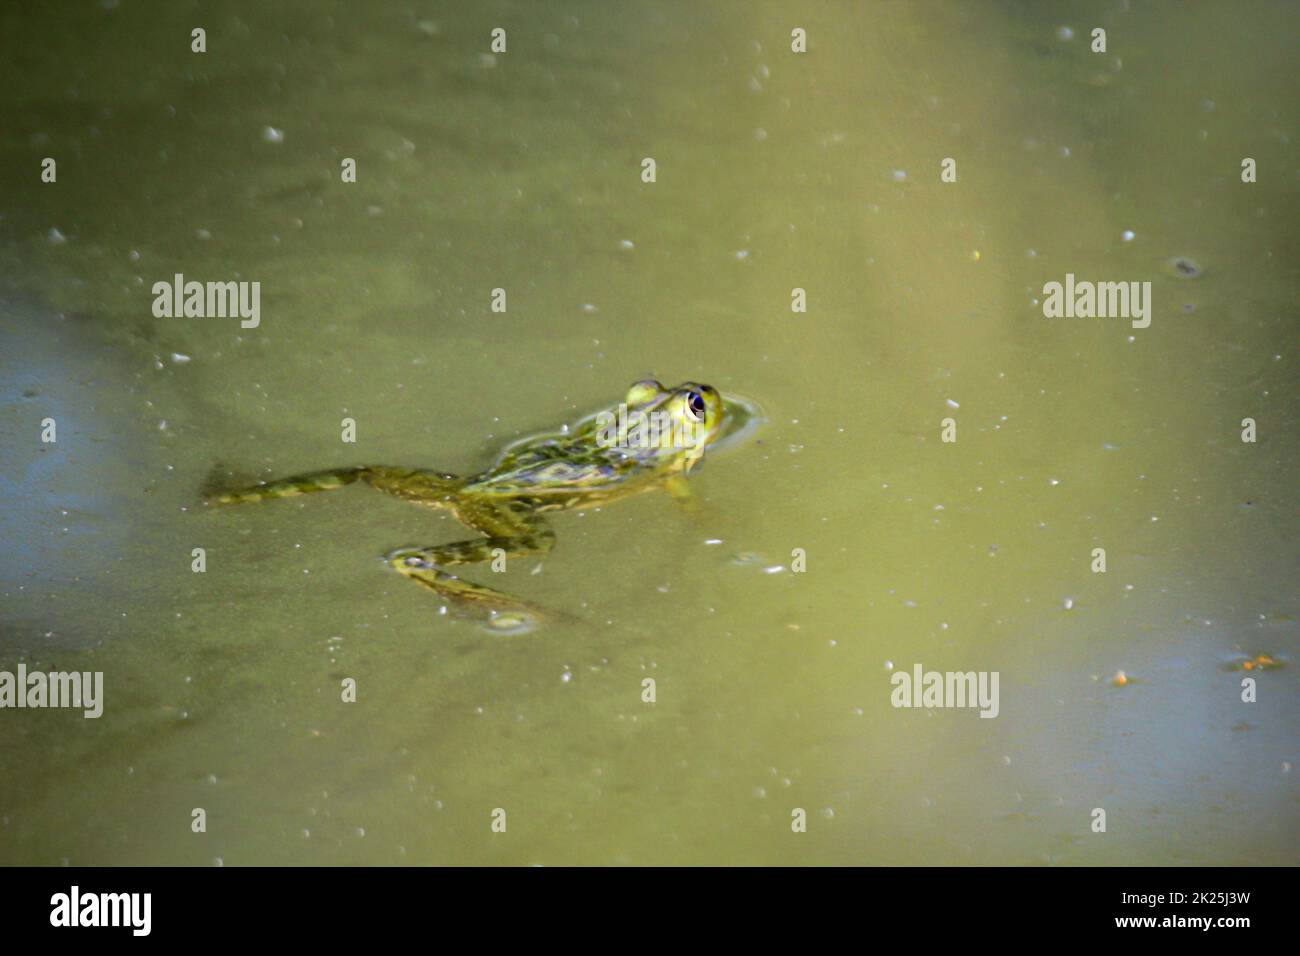 Une grenouille verte nage à travers un étang avec de l'eau verdâtre. Banque D'Images